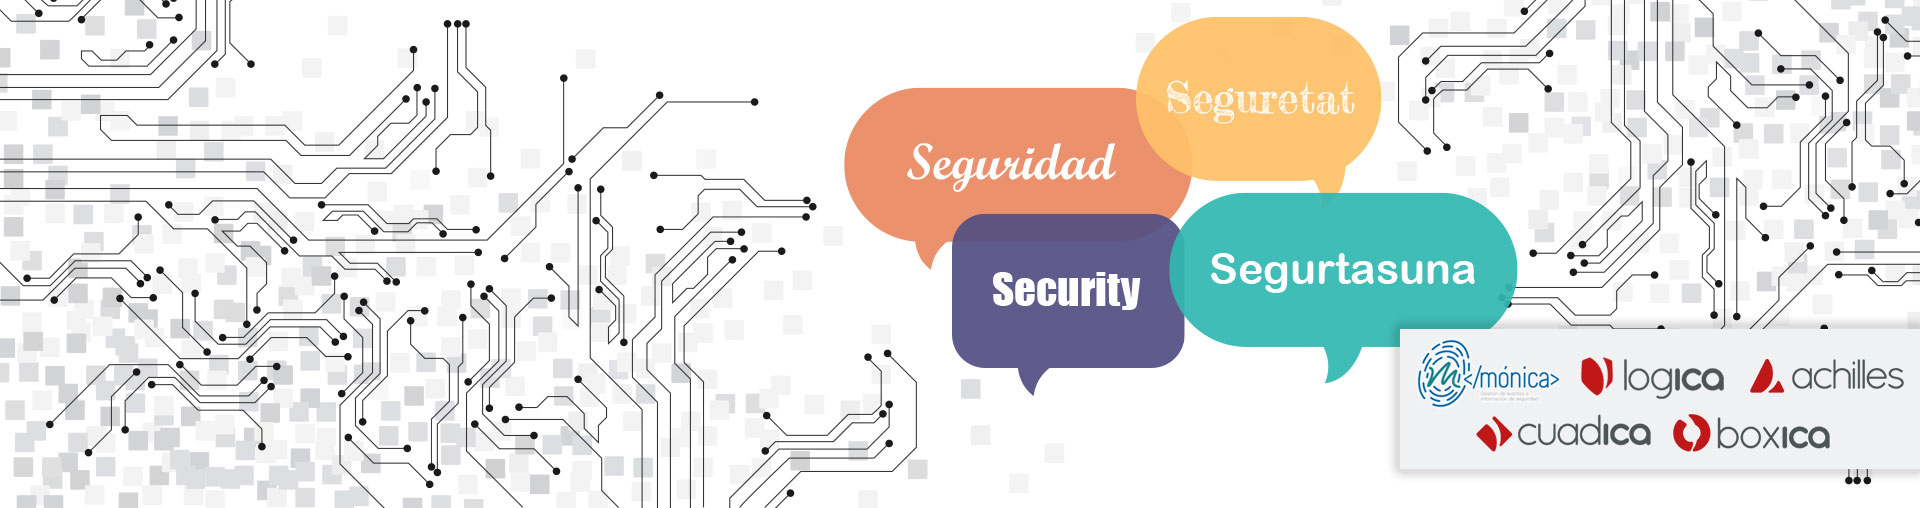 Las herramientas de cibereguridad desarrolladas por ICA SyS ya están disponibles en euskera, catalán y gallego 